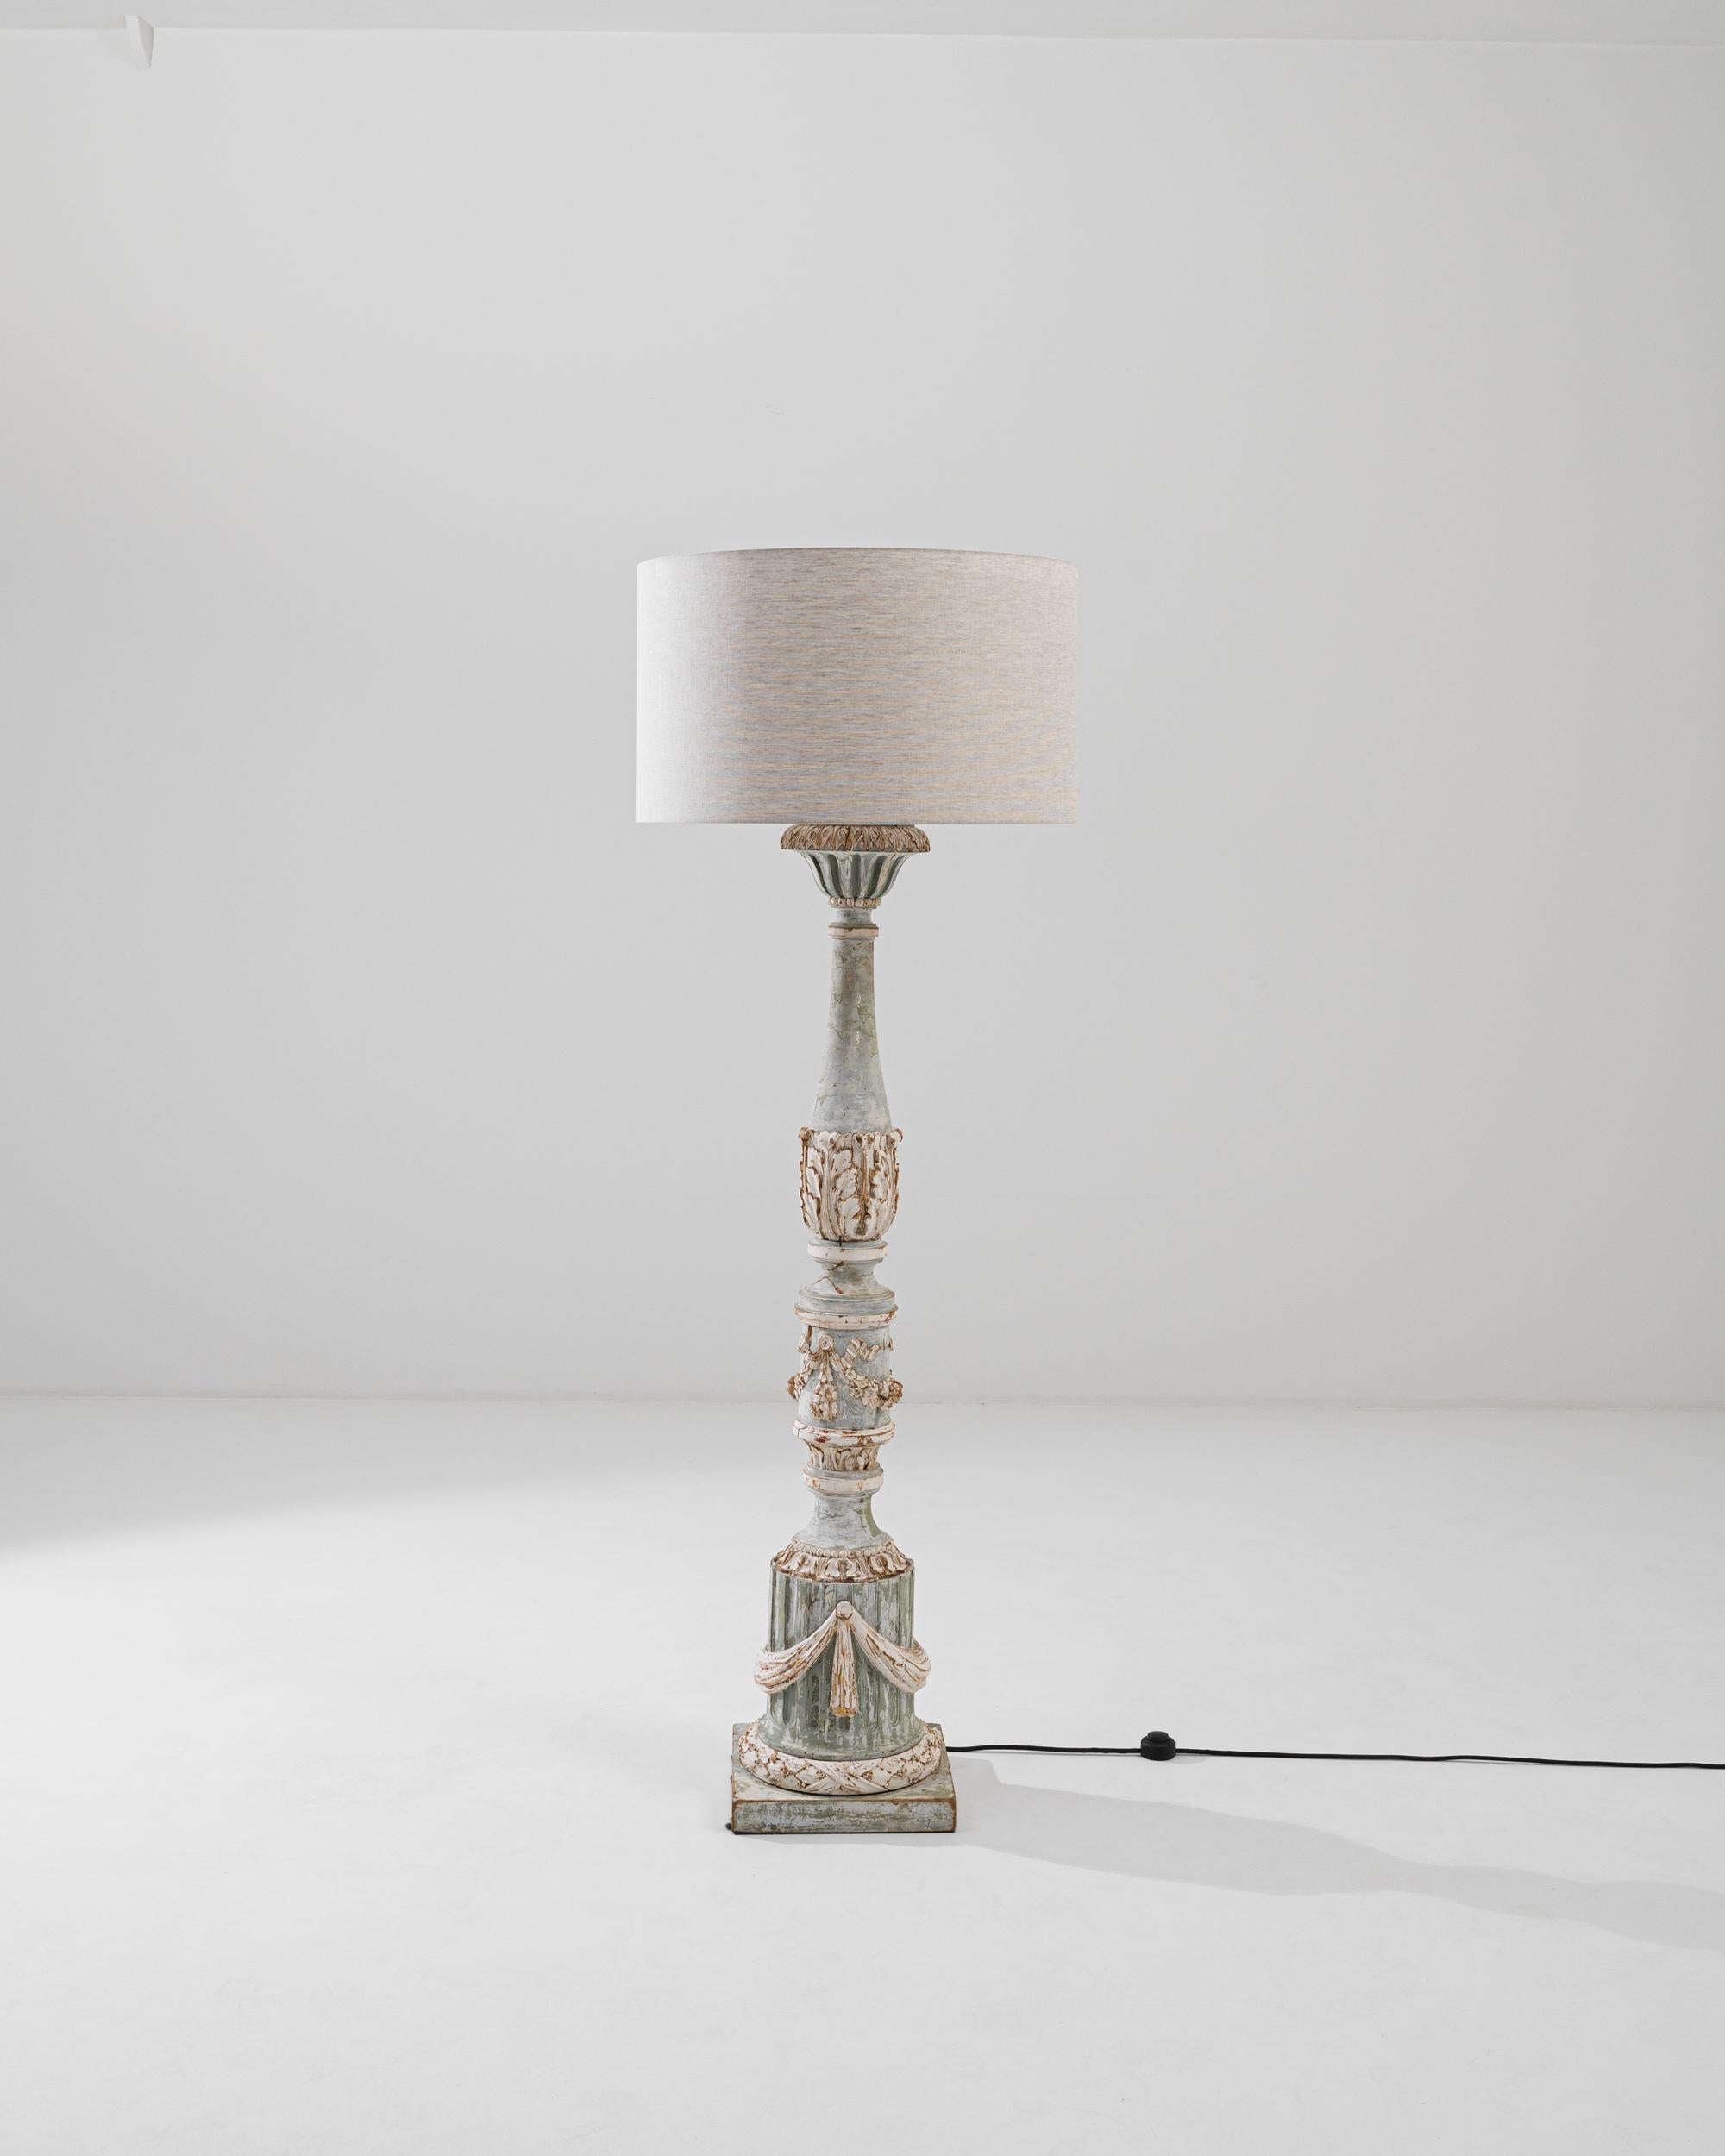 Diese zarte und kunstvolle Stehlampe aus geschnitztem Holz bringt einen Hauch von französischem Charme in Ihr Interieur. Das um die Jahrhundertwende entstandene Design bietet eine kunstvolle Interpretation neoklassizistischer Motive. Die kannelierte